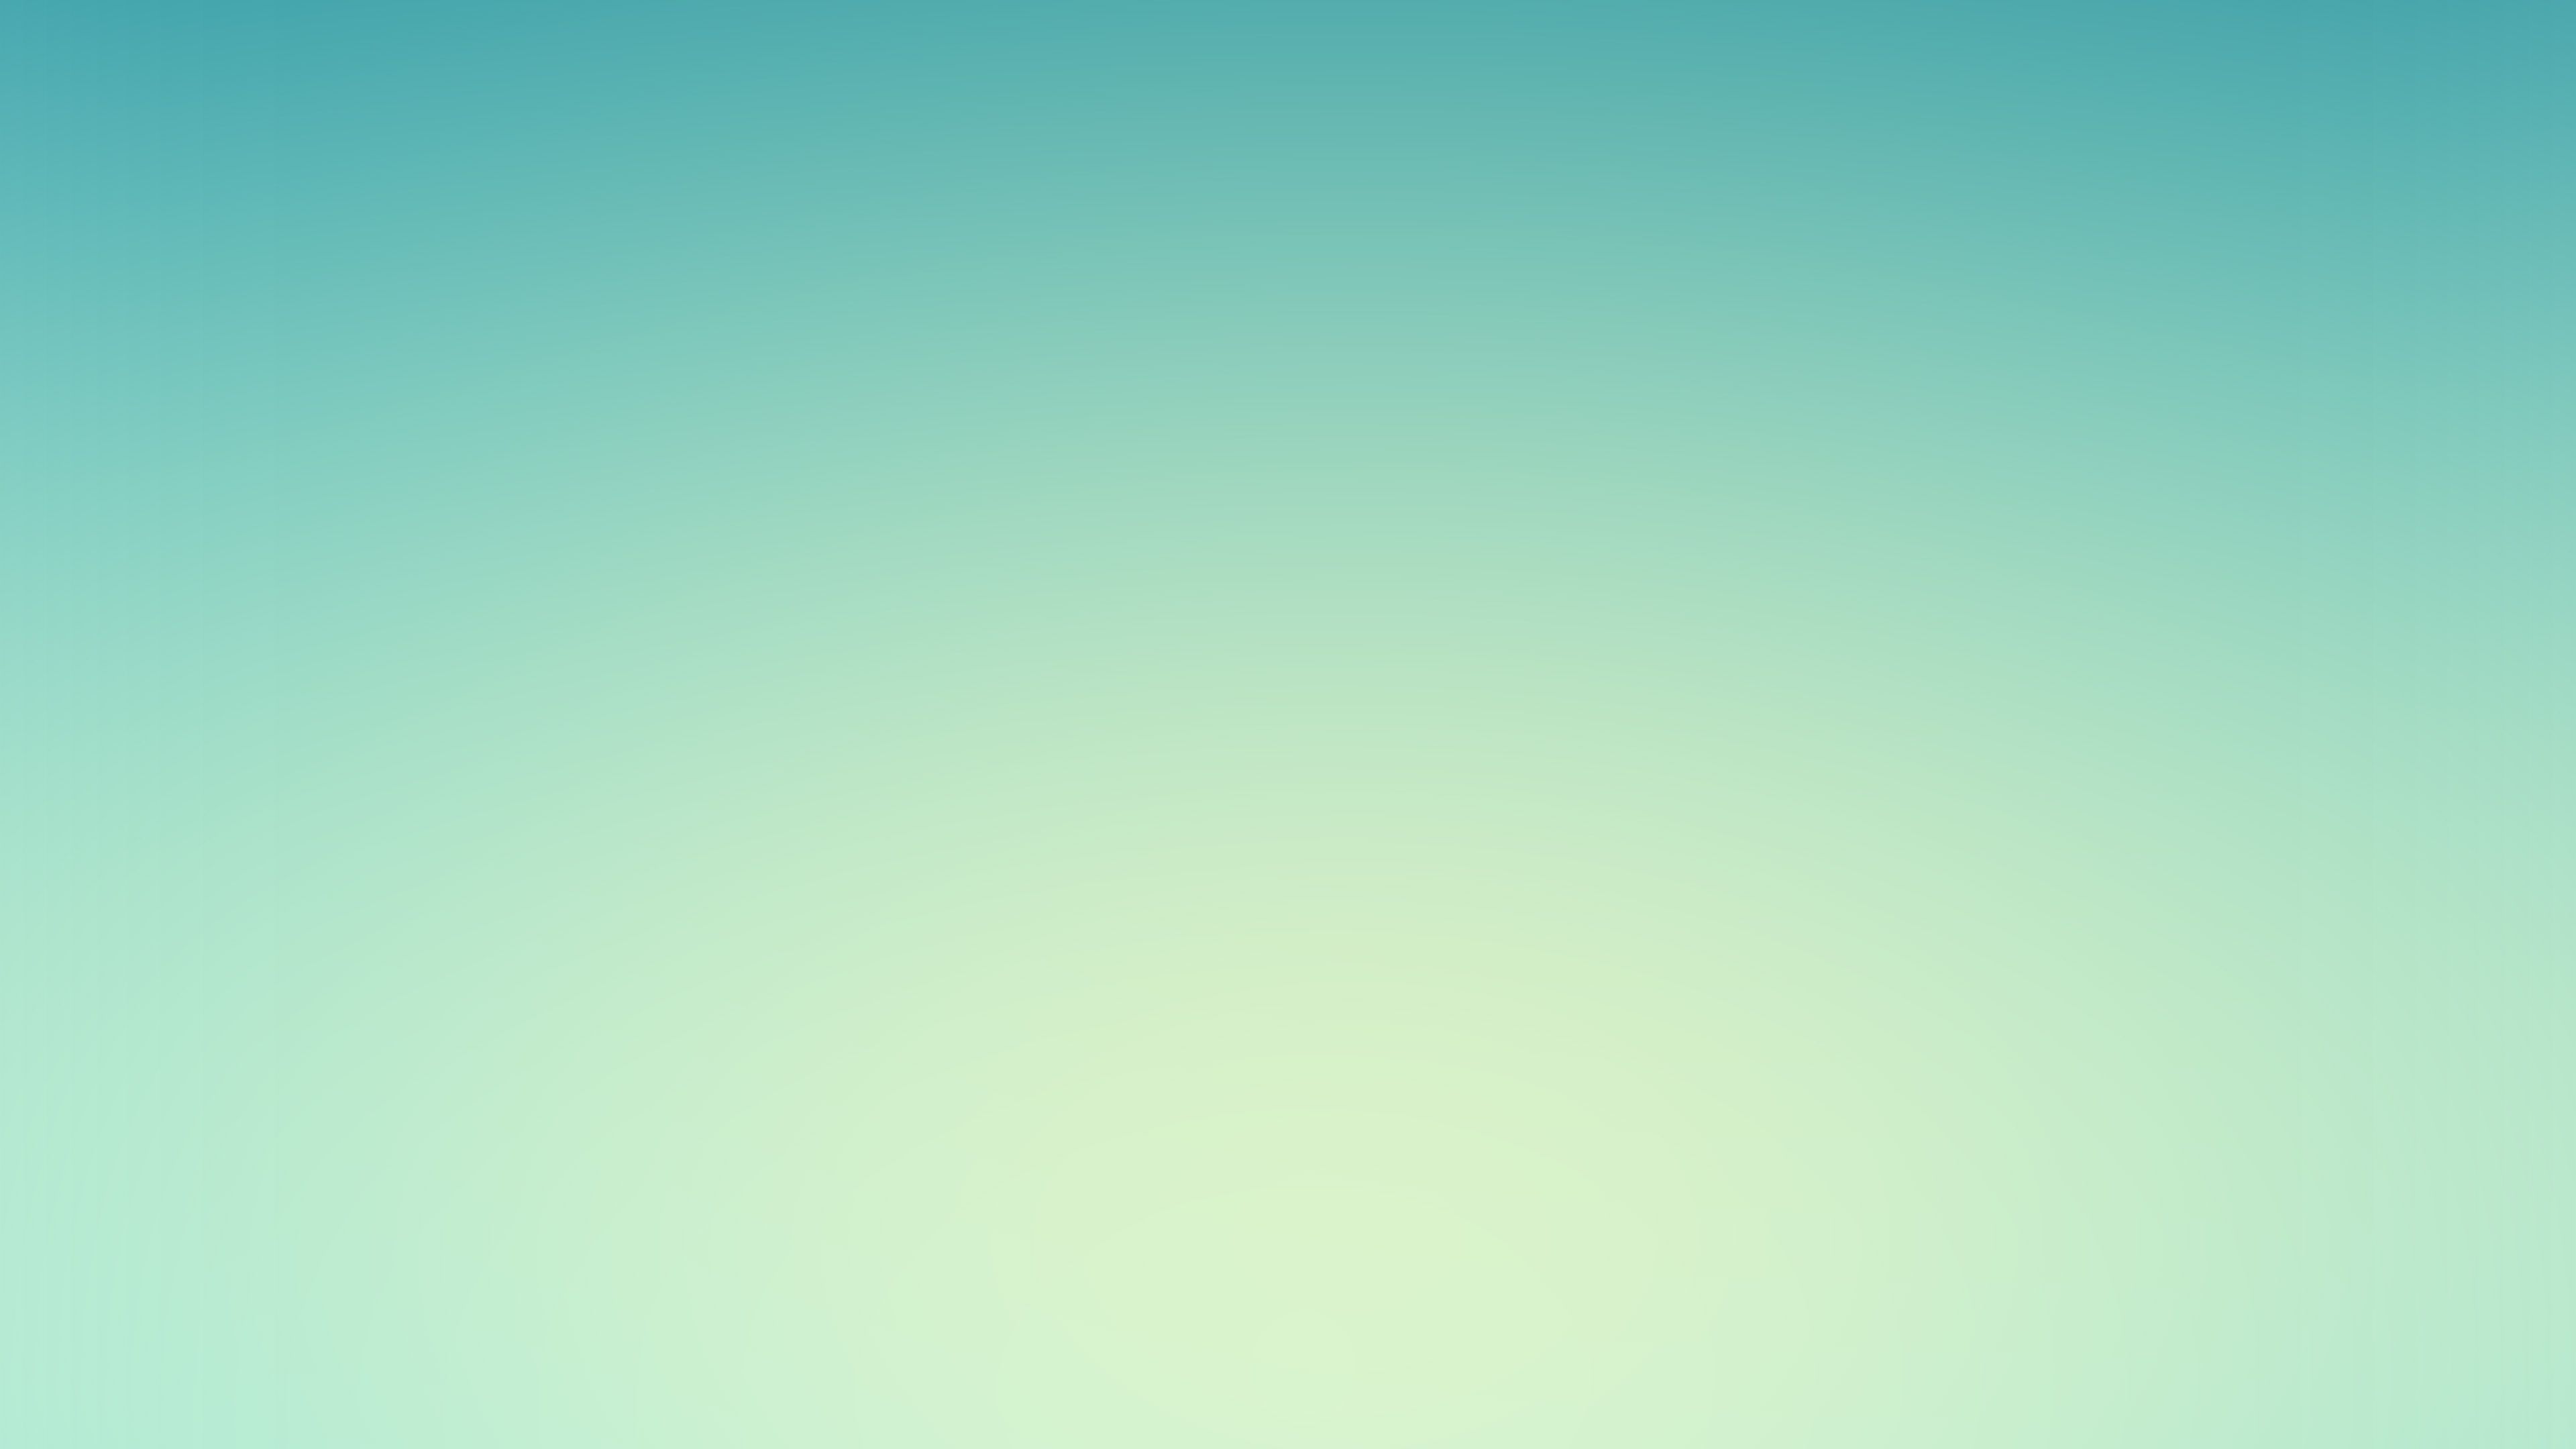 wallpaper for desktop, laptop. light green blue sky gradation blur